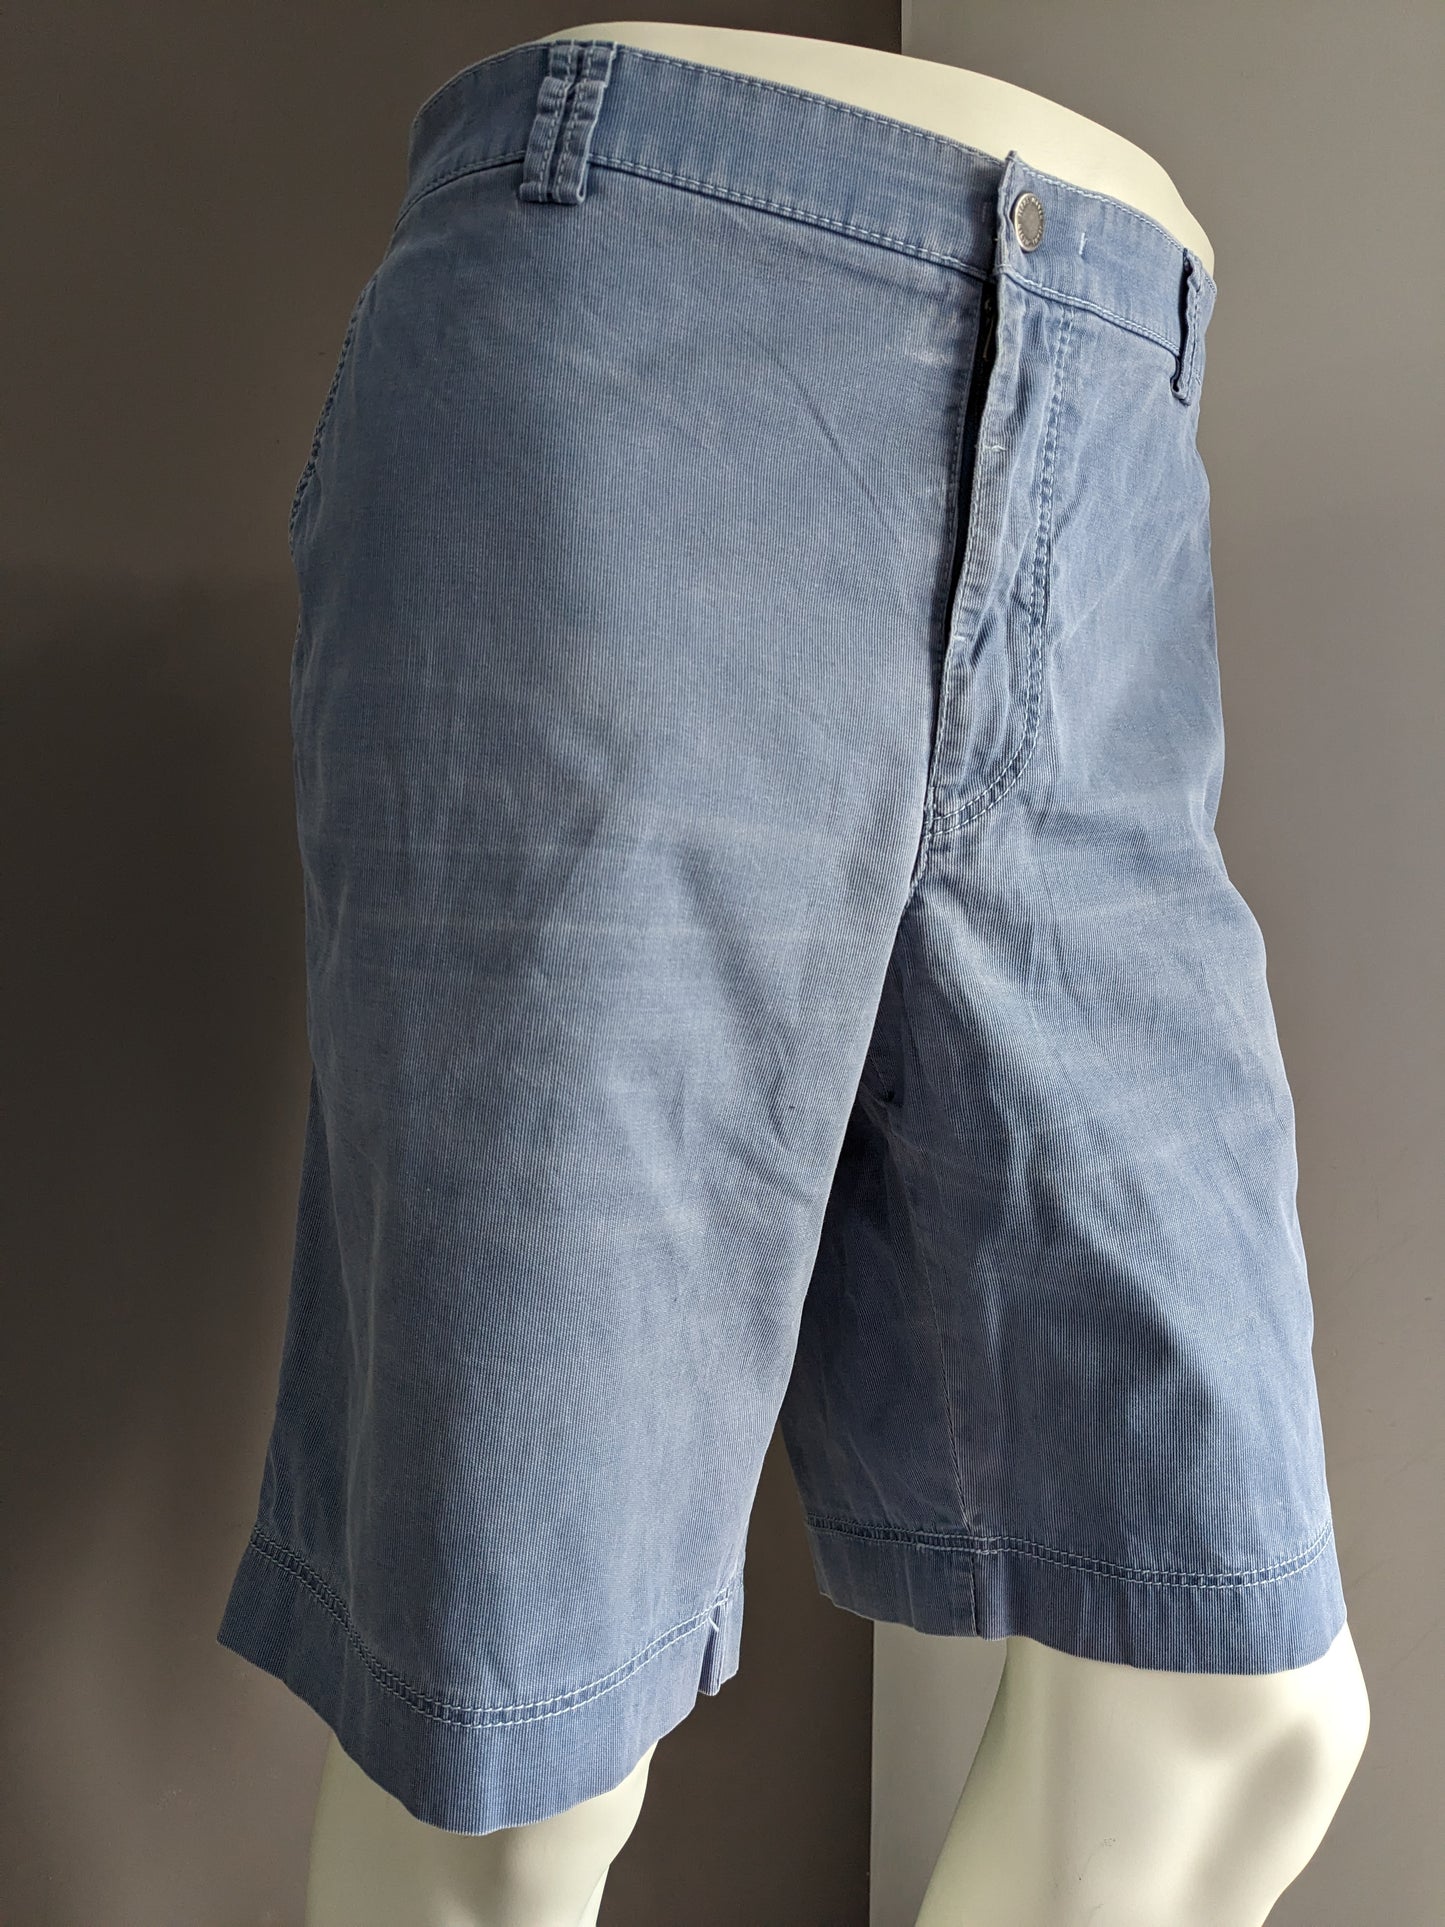 Pantalones cortos de meyer. Motivo de rayas azules. Tamaño 29 (58 / xl)